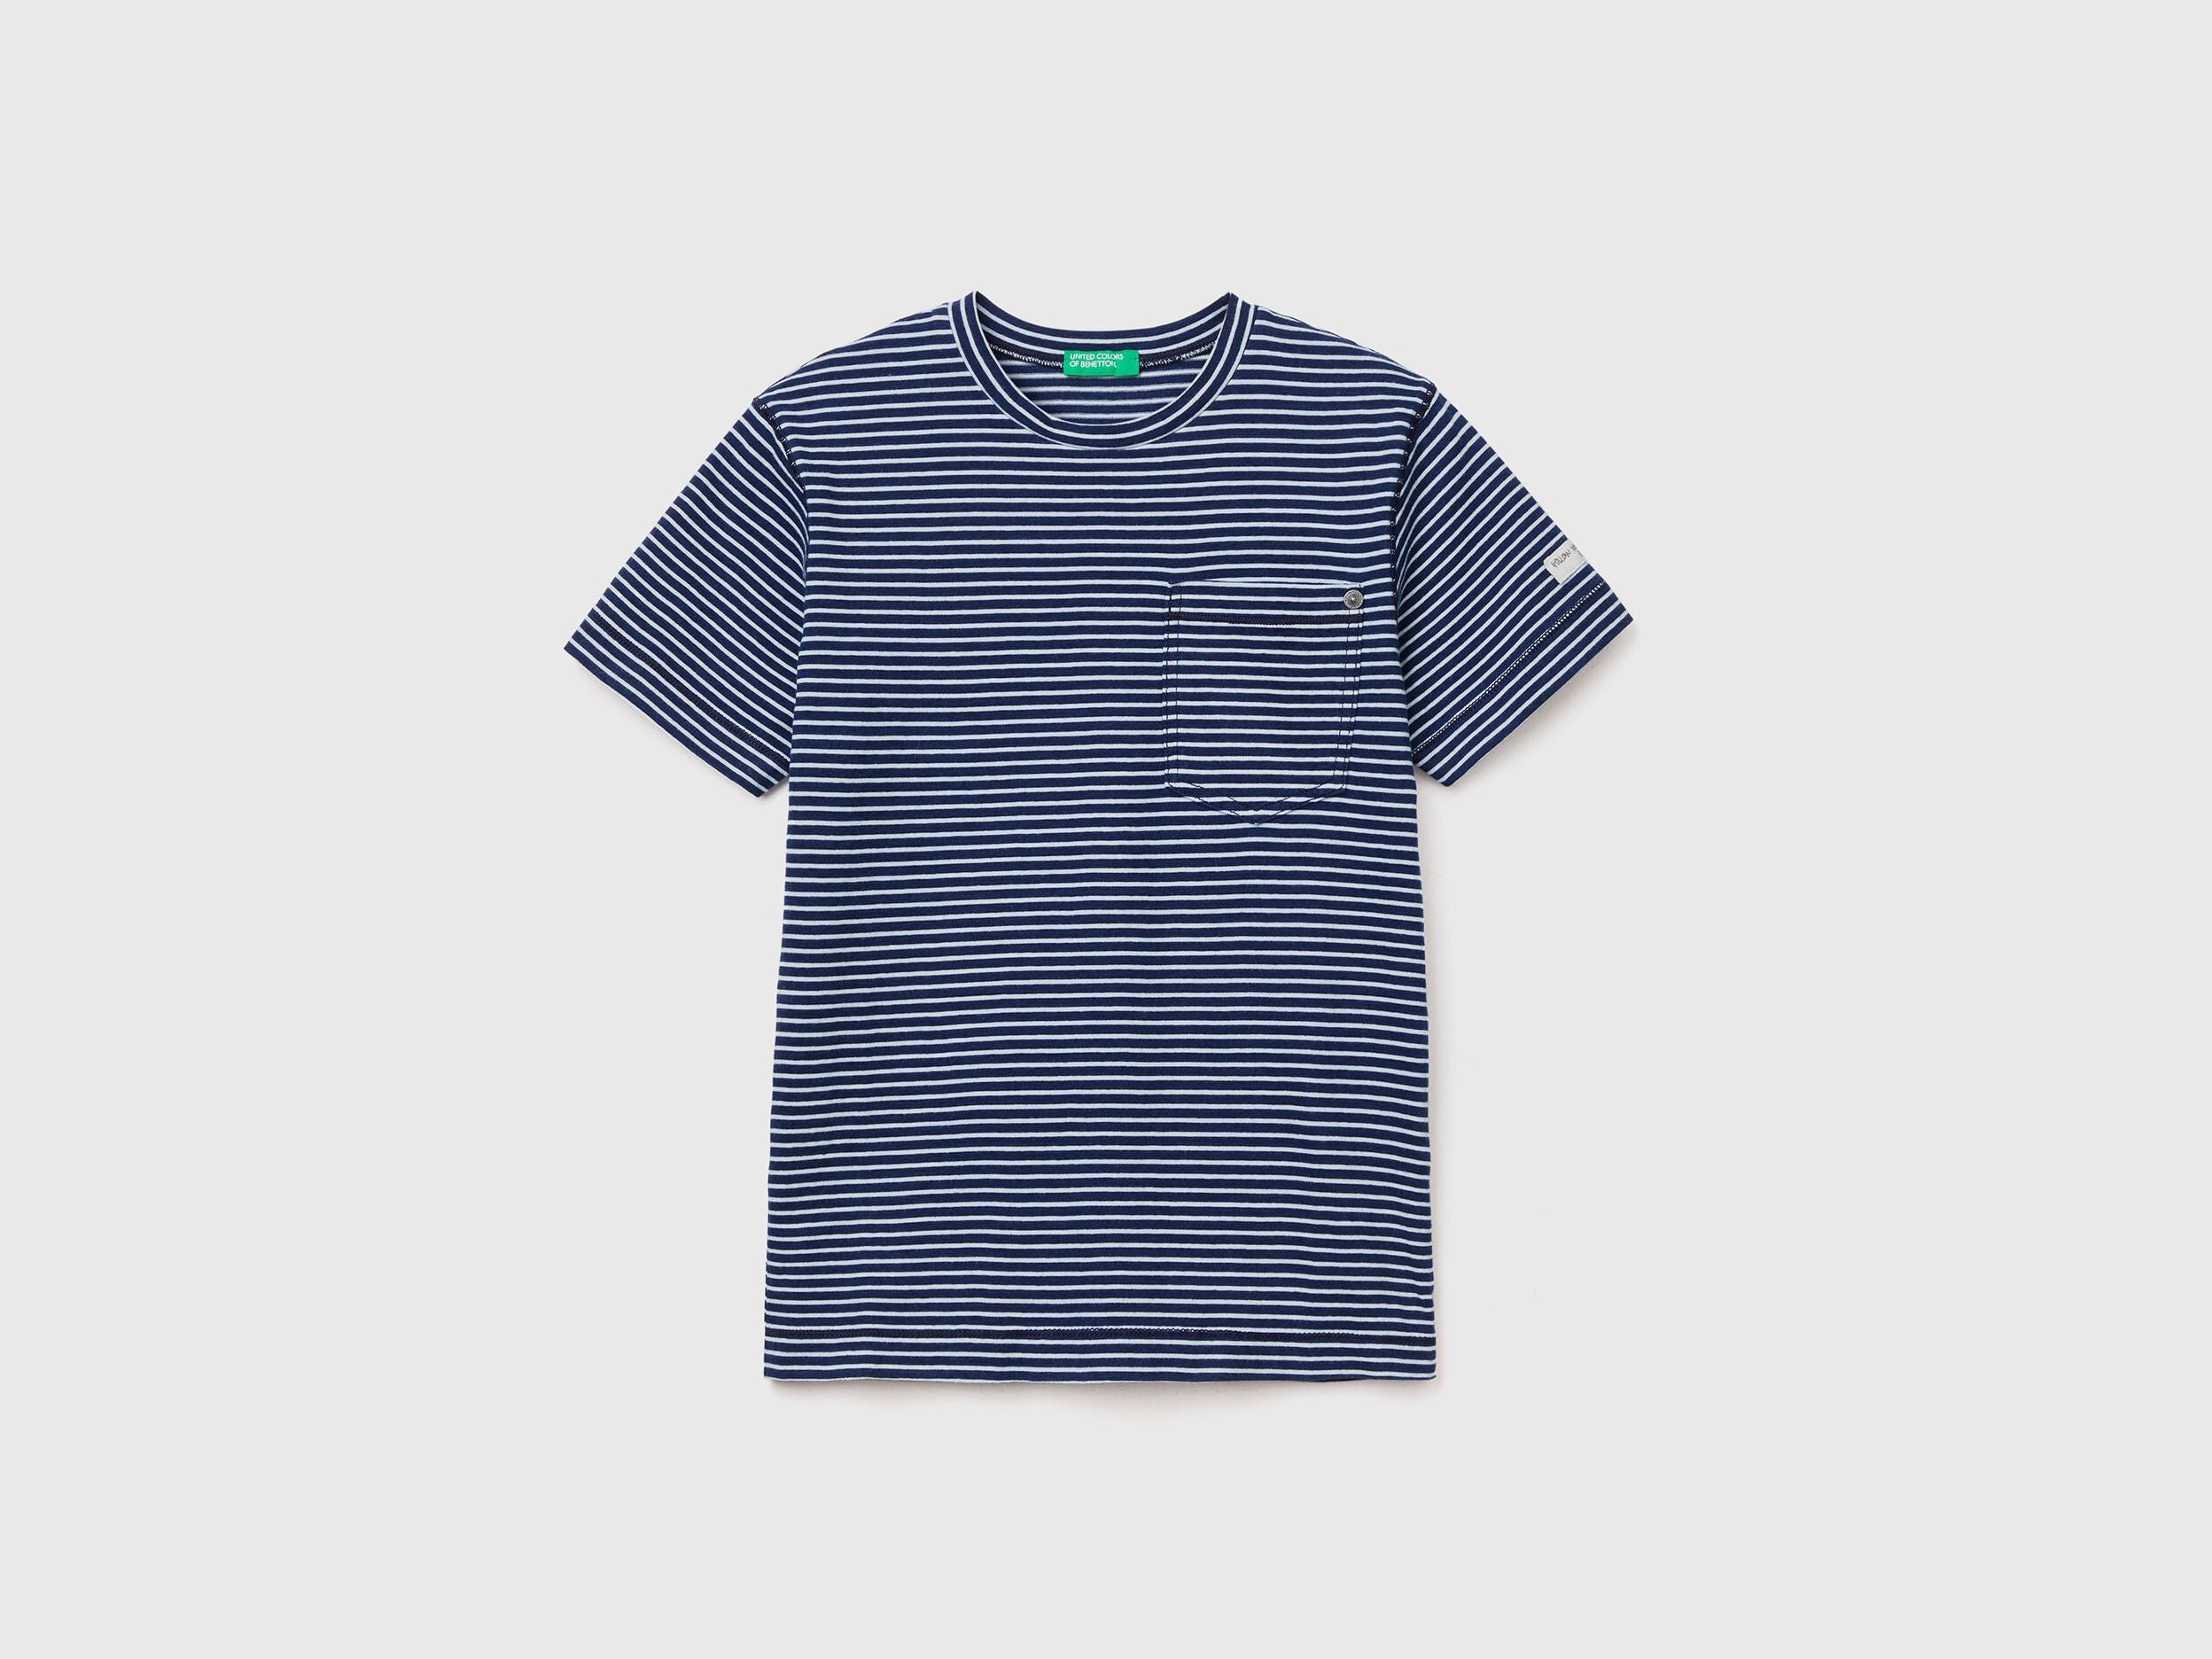 Blue Short Sleeve T-Shirt - 01